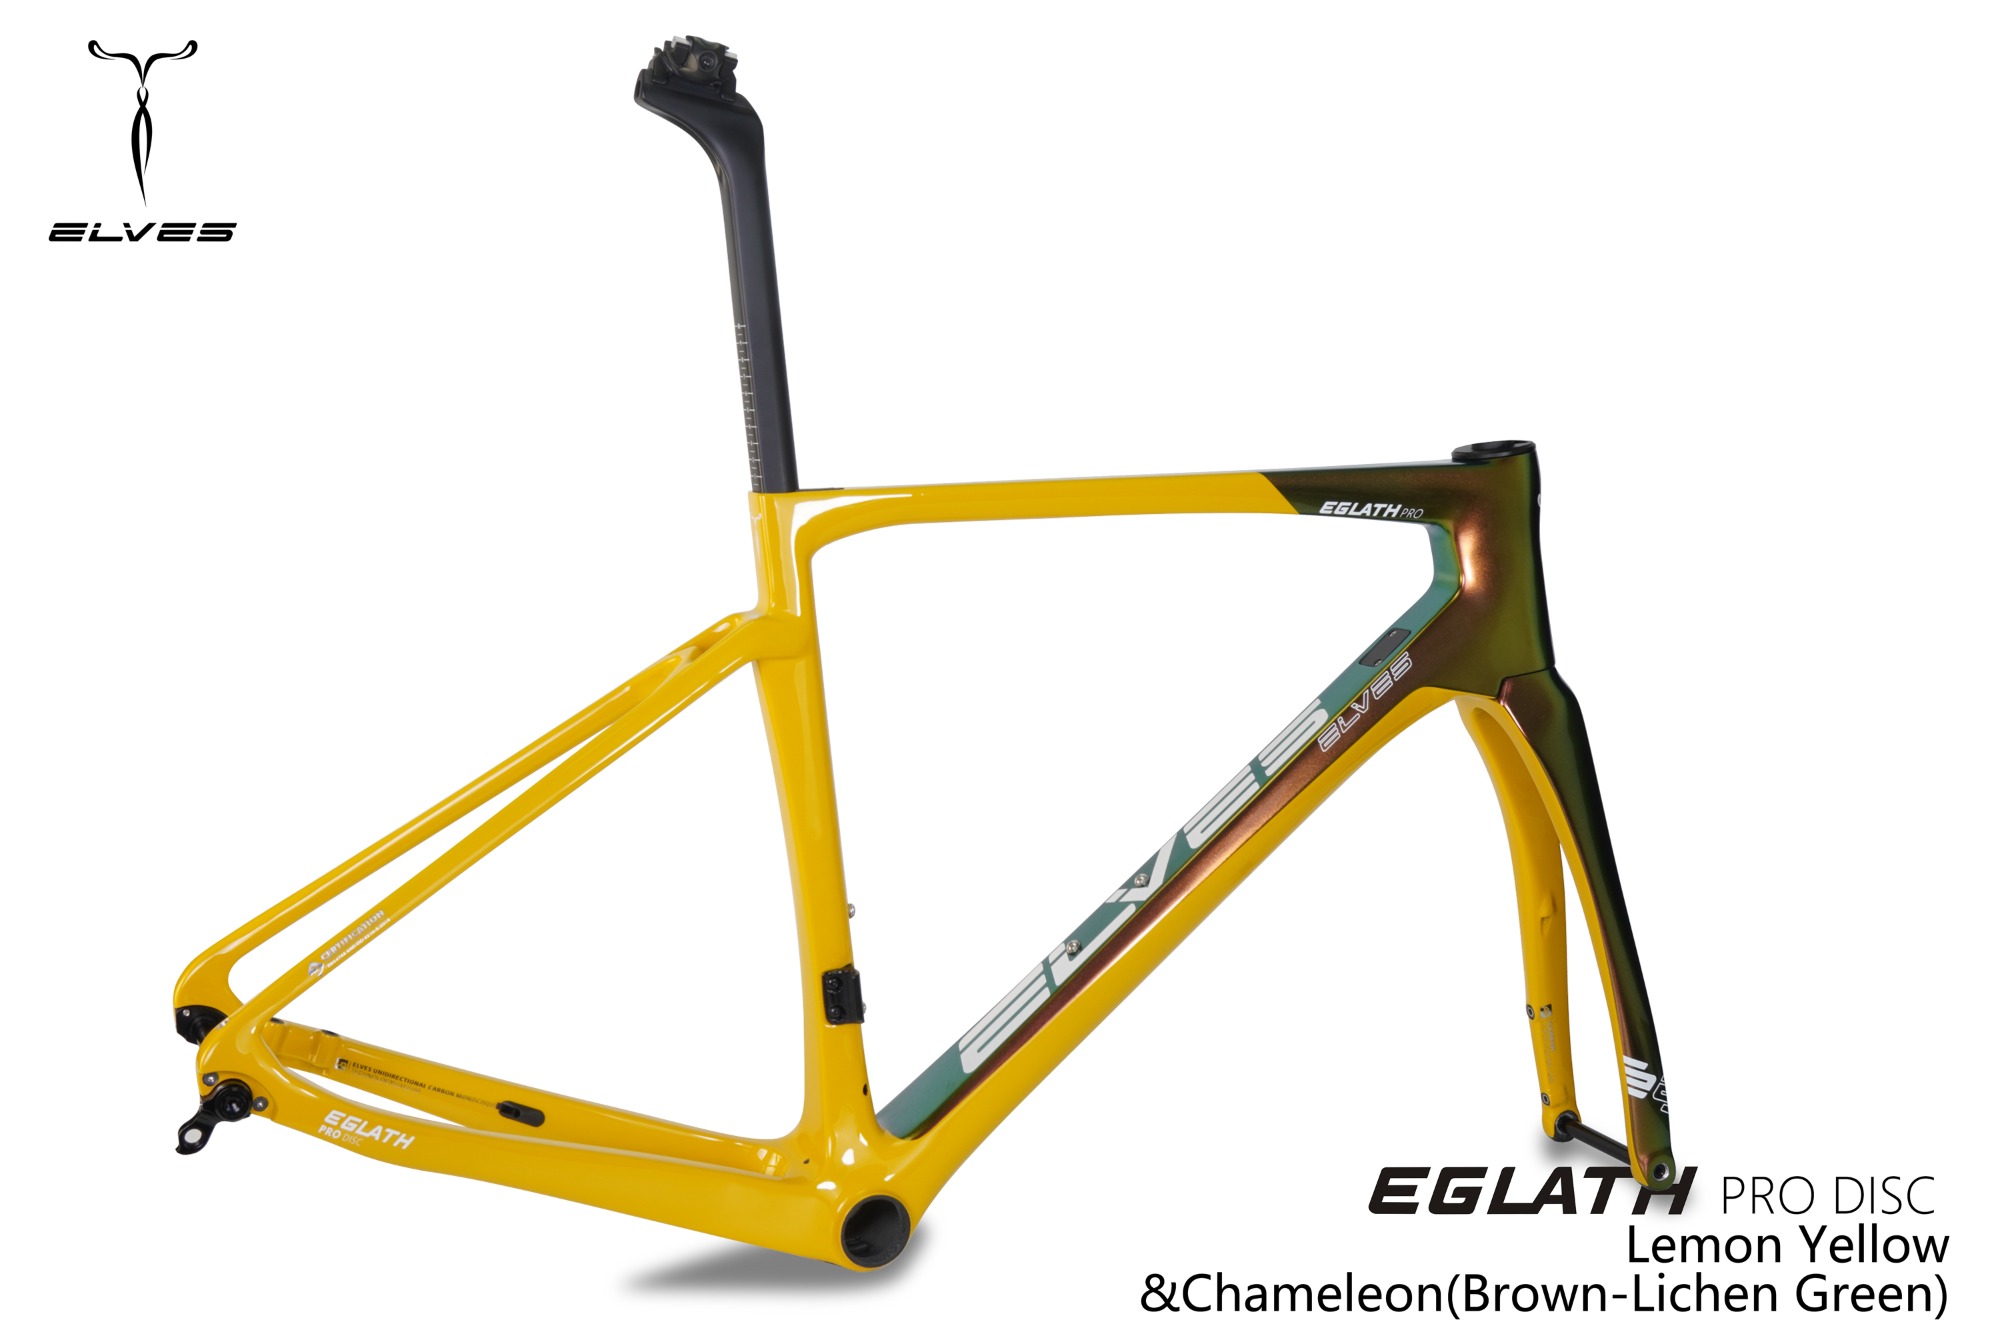 ELVES Eglath Pro Disc Ultegra Di2 - 自転車